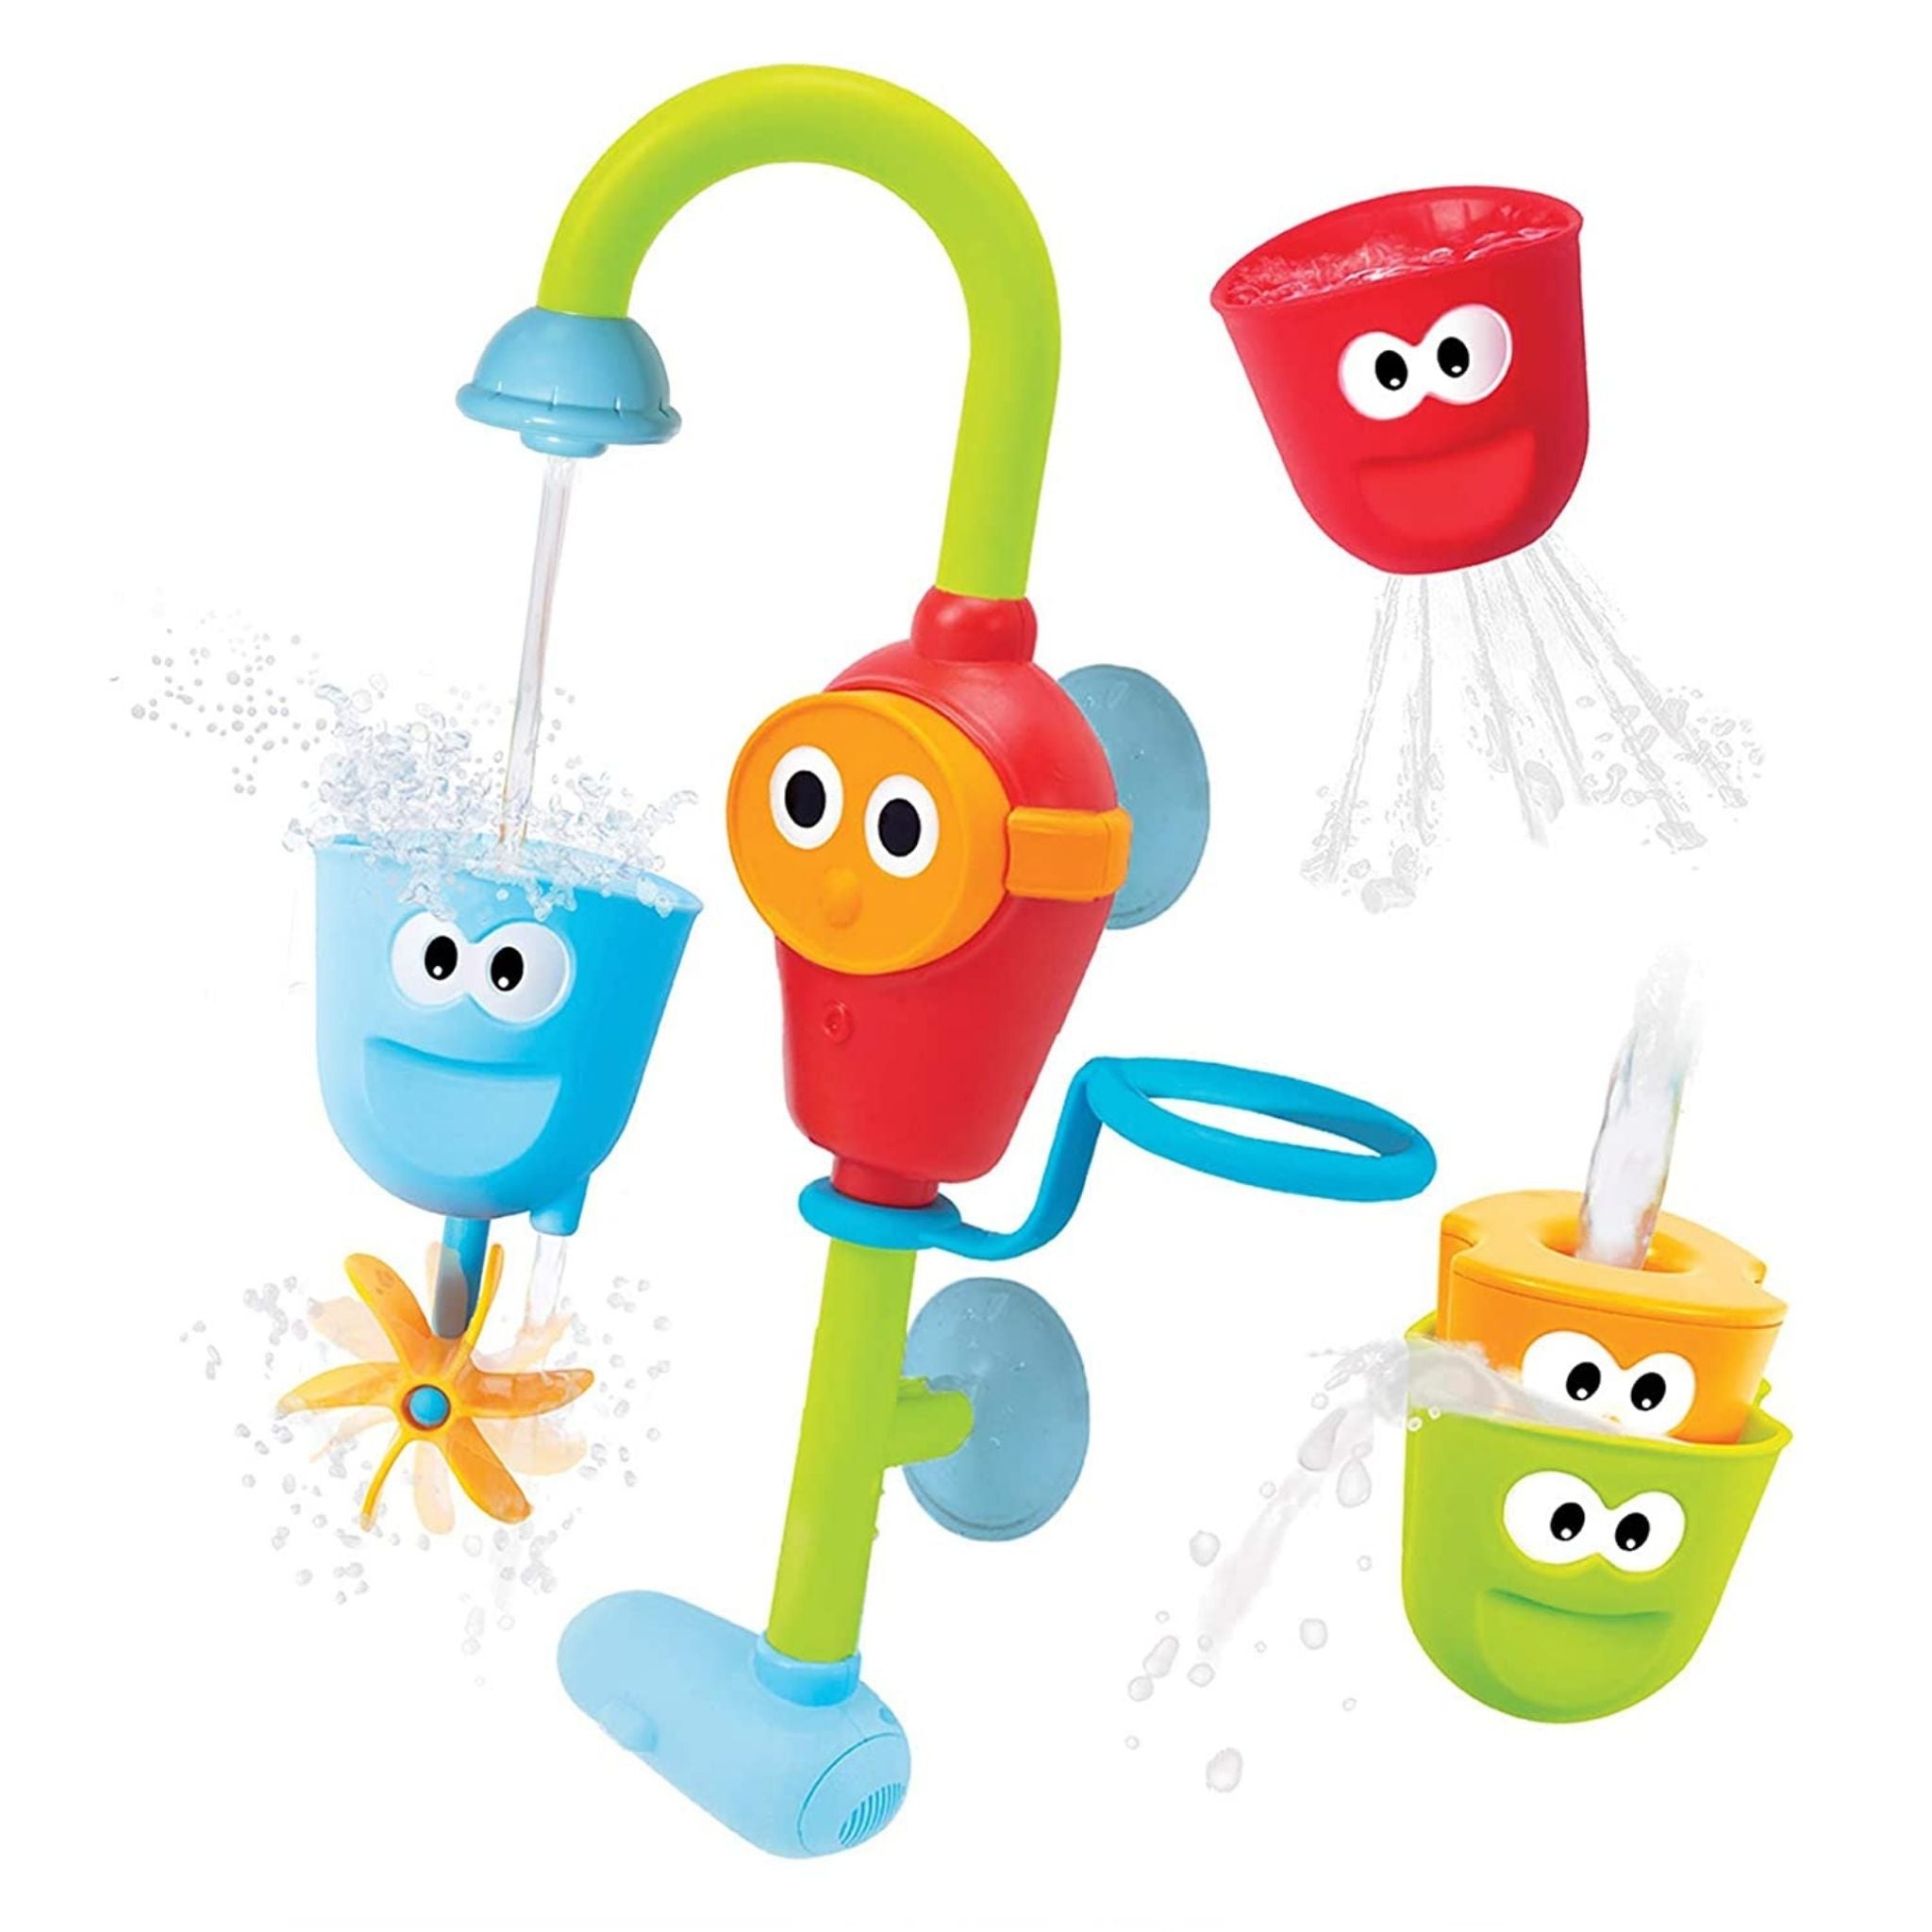 Набор для ванны игрушки. Игрушка для ванной Yookidoo утка-Русалка с водометом и аксессуарами. Yookidoo игрушка для ванной. 40116 Волшебный кран. Игрушка для ванной Yookidoo Волшебный кран большой.